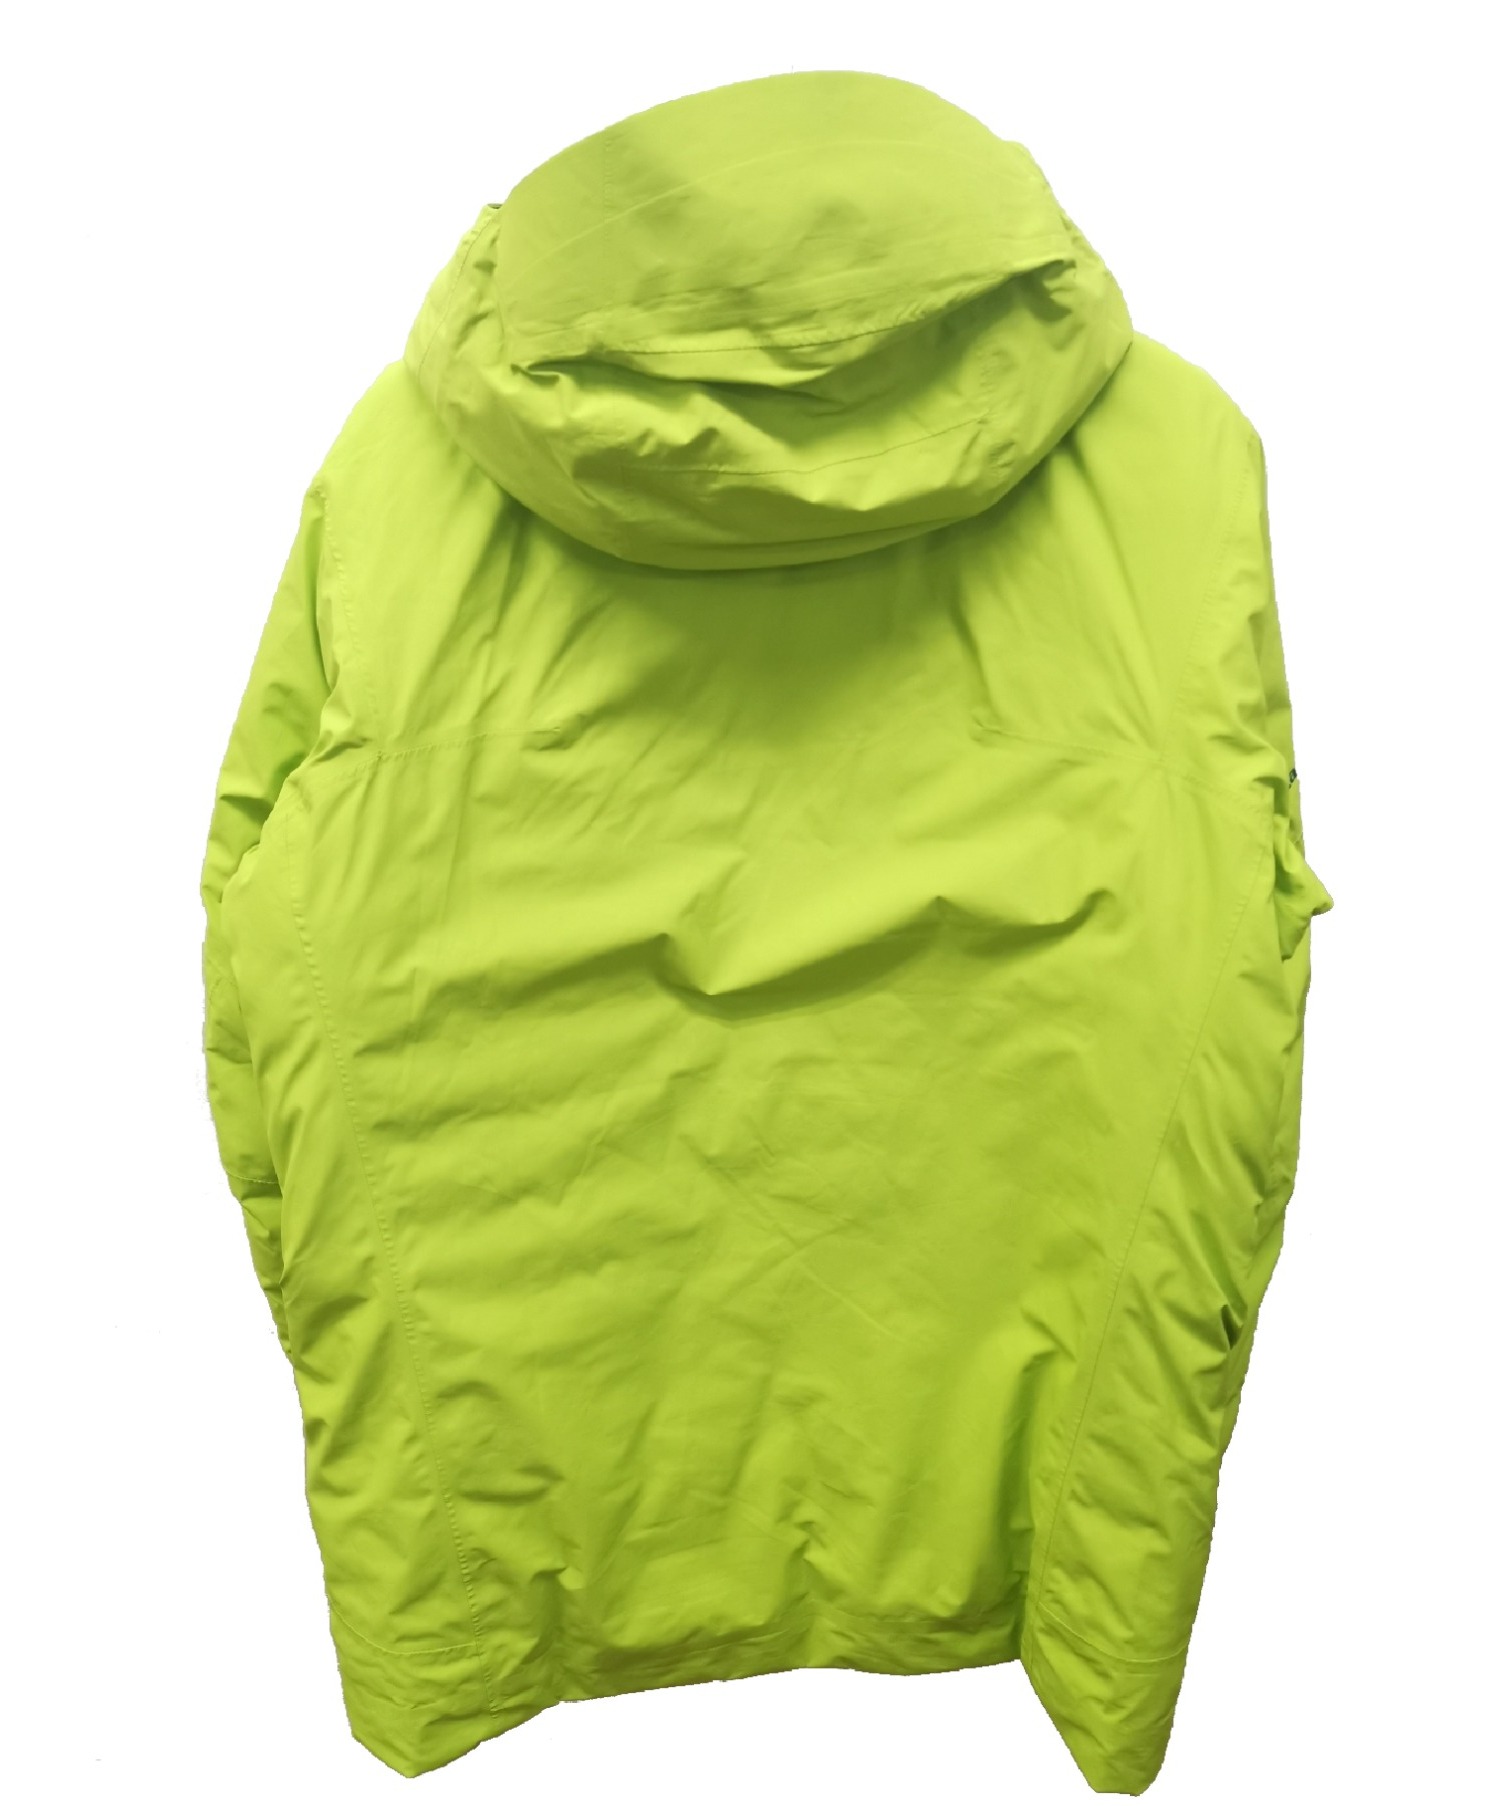 Patagonia (パタゴニア) プリモダウンジャケット ライトグリーン サイズ:S